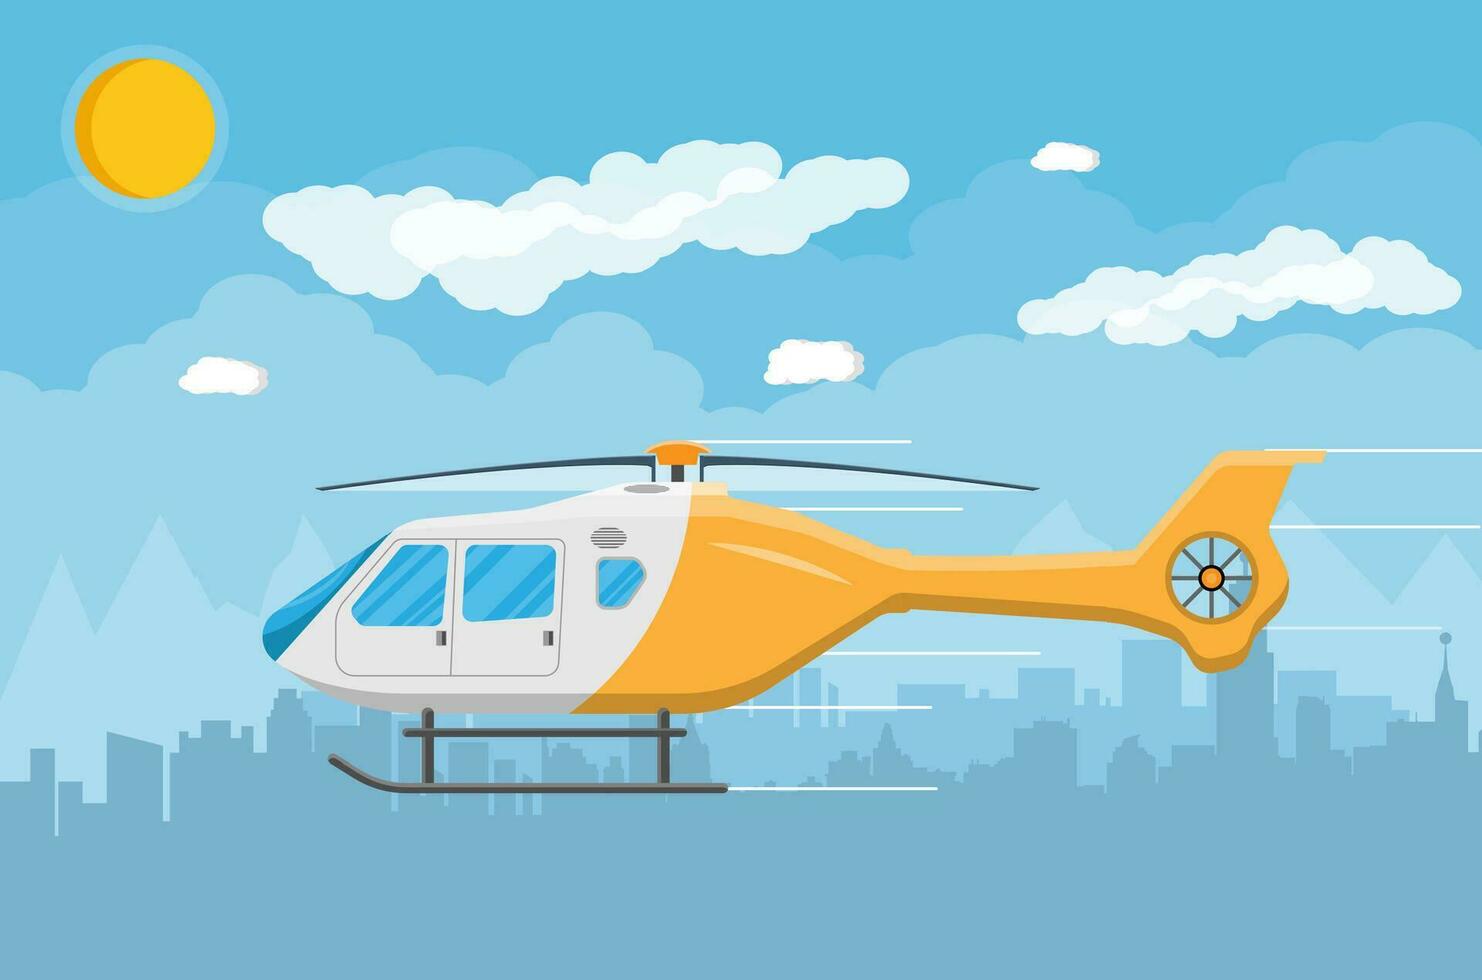 hélicoptère transport, aérien véhicule avec hélice, civil aviation. paysage urbain, ciel, des nuages et Soleil. vecteur illustration dans plat style